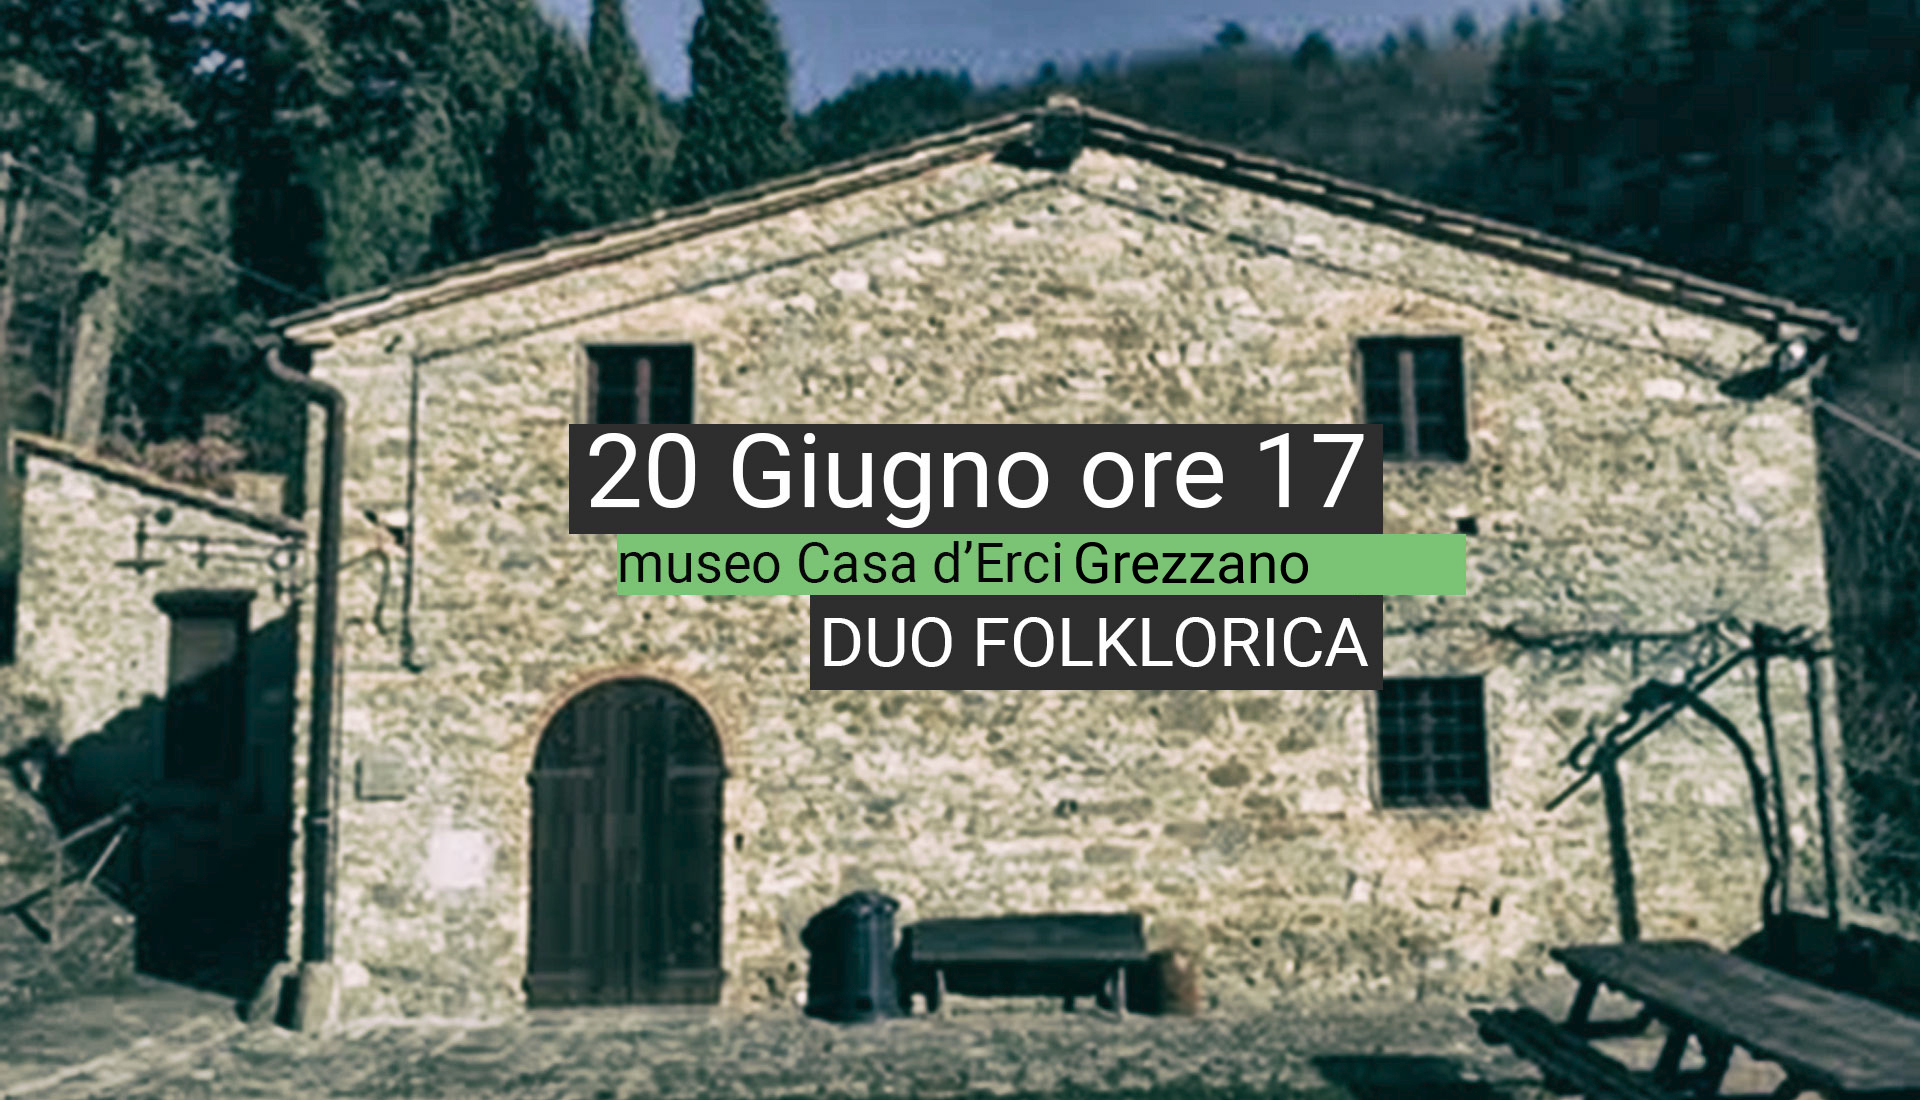 Duo Folklorica live Museo Casa D'Erci 20 Giugno ore 17 Grezzano